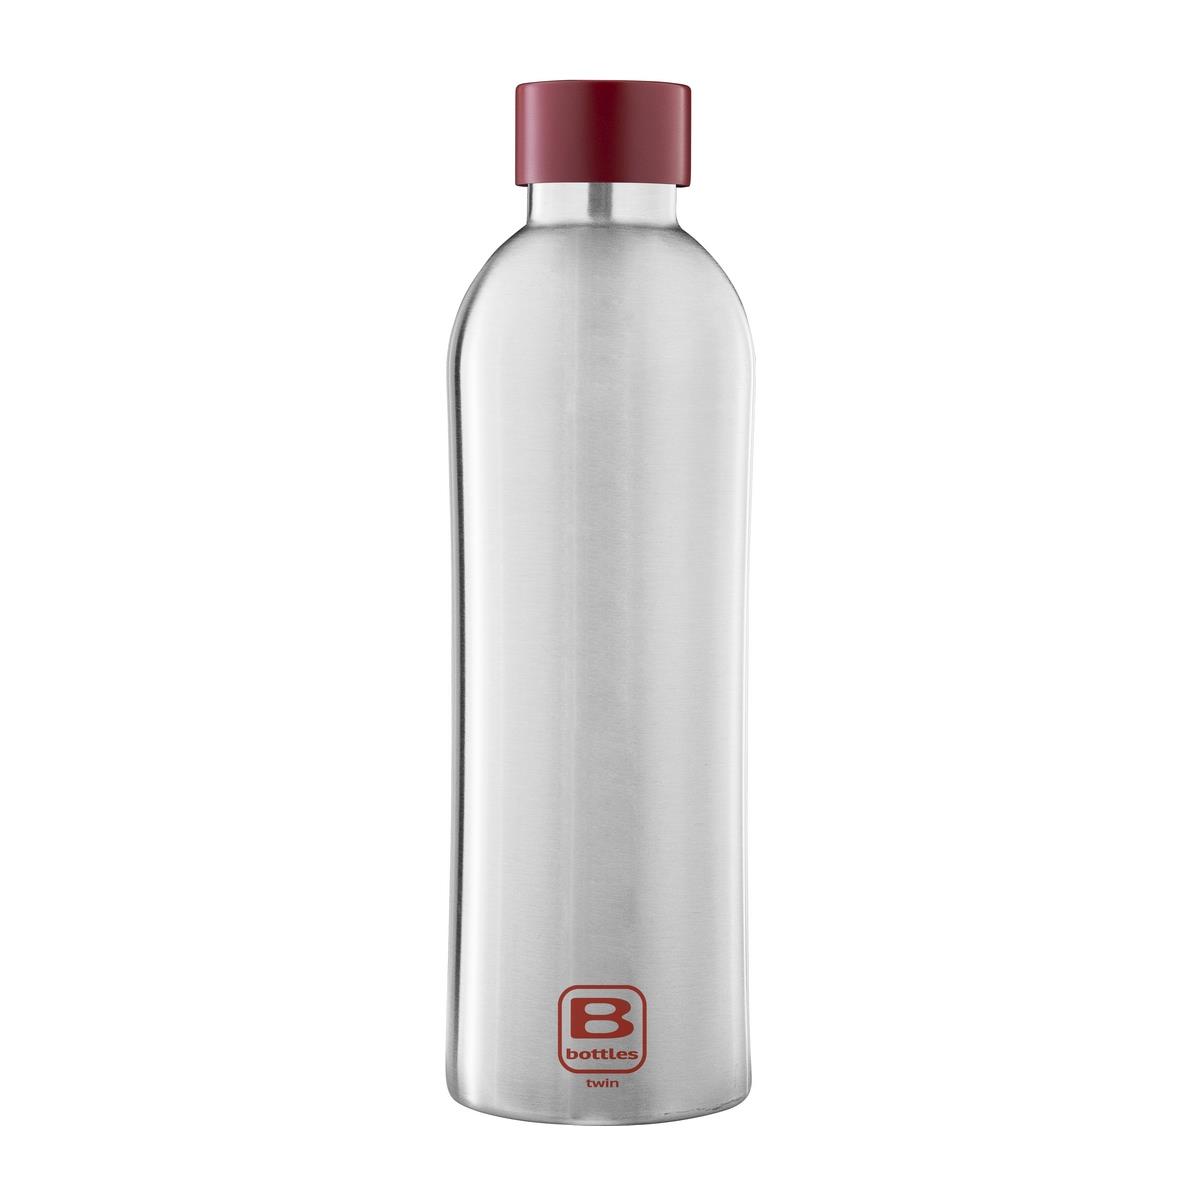 photo B Bottles Twin - Steel & Red - 800 ml - Bottiglia Termica a doppia parete in acciaio inox 18/10